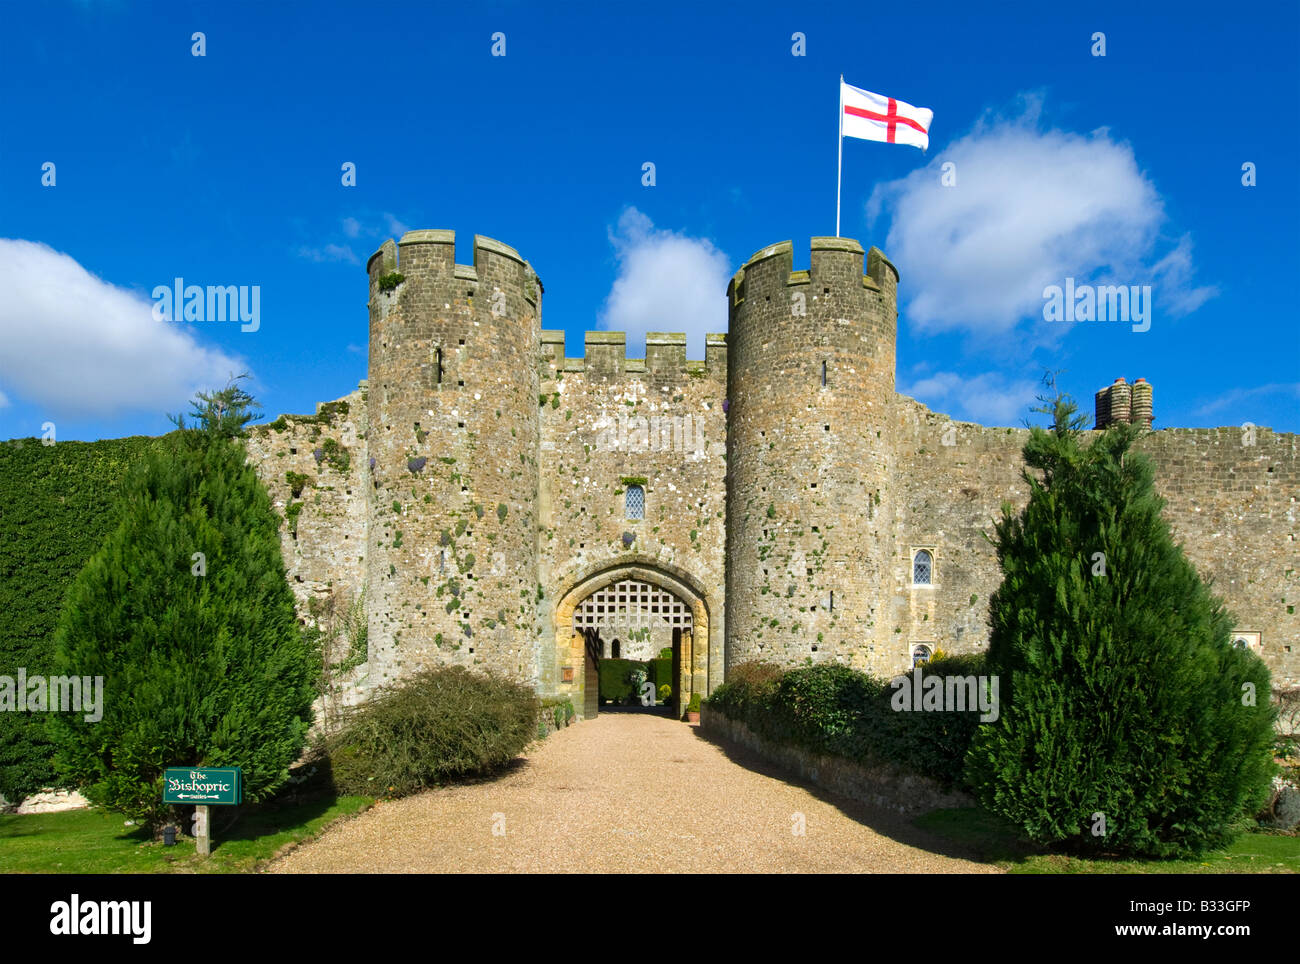 Amberley Castle Eingangstor im Frühjahr, fliegende England Flagge von Saint George, West Sussex England Großbritannien Stockfoto